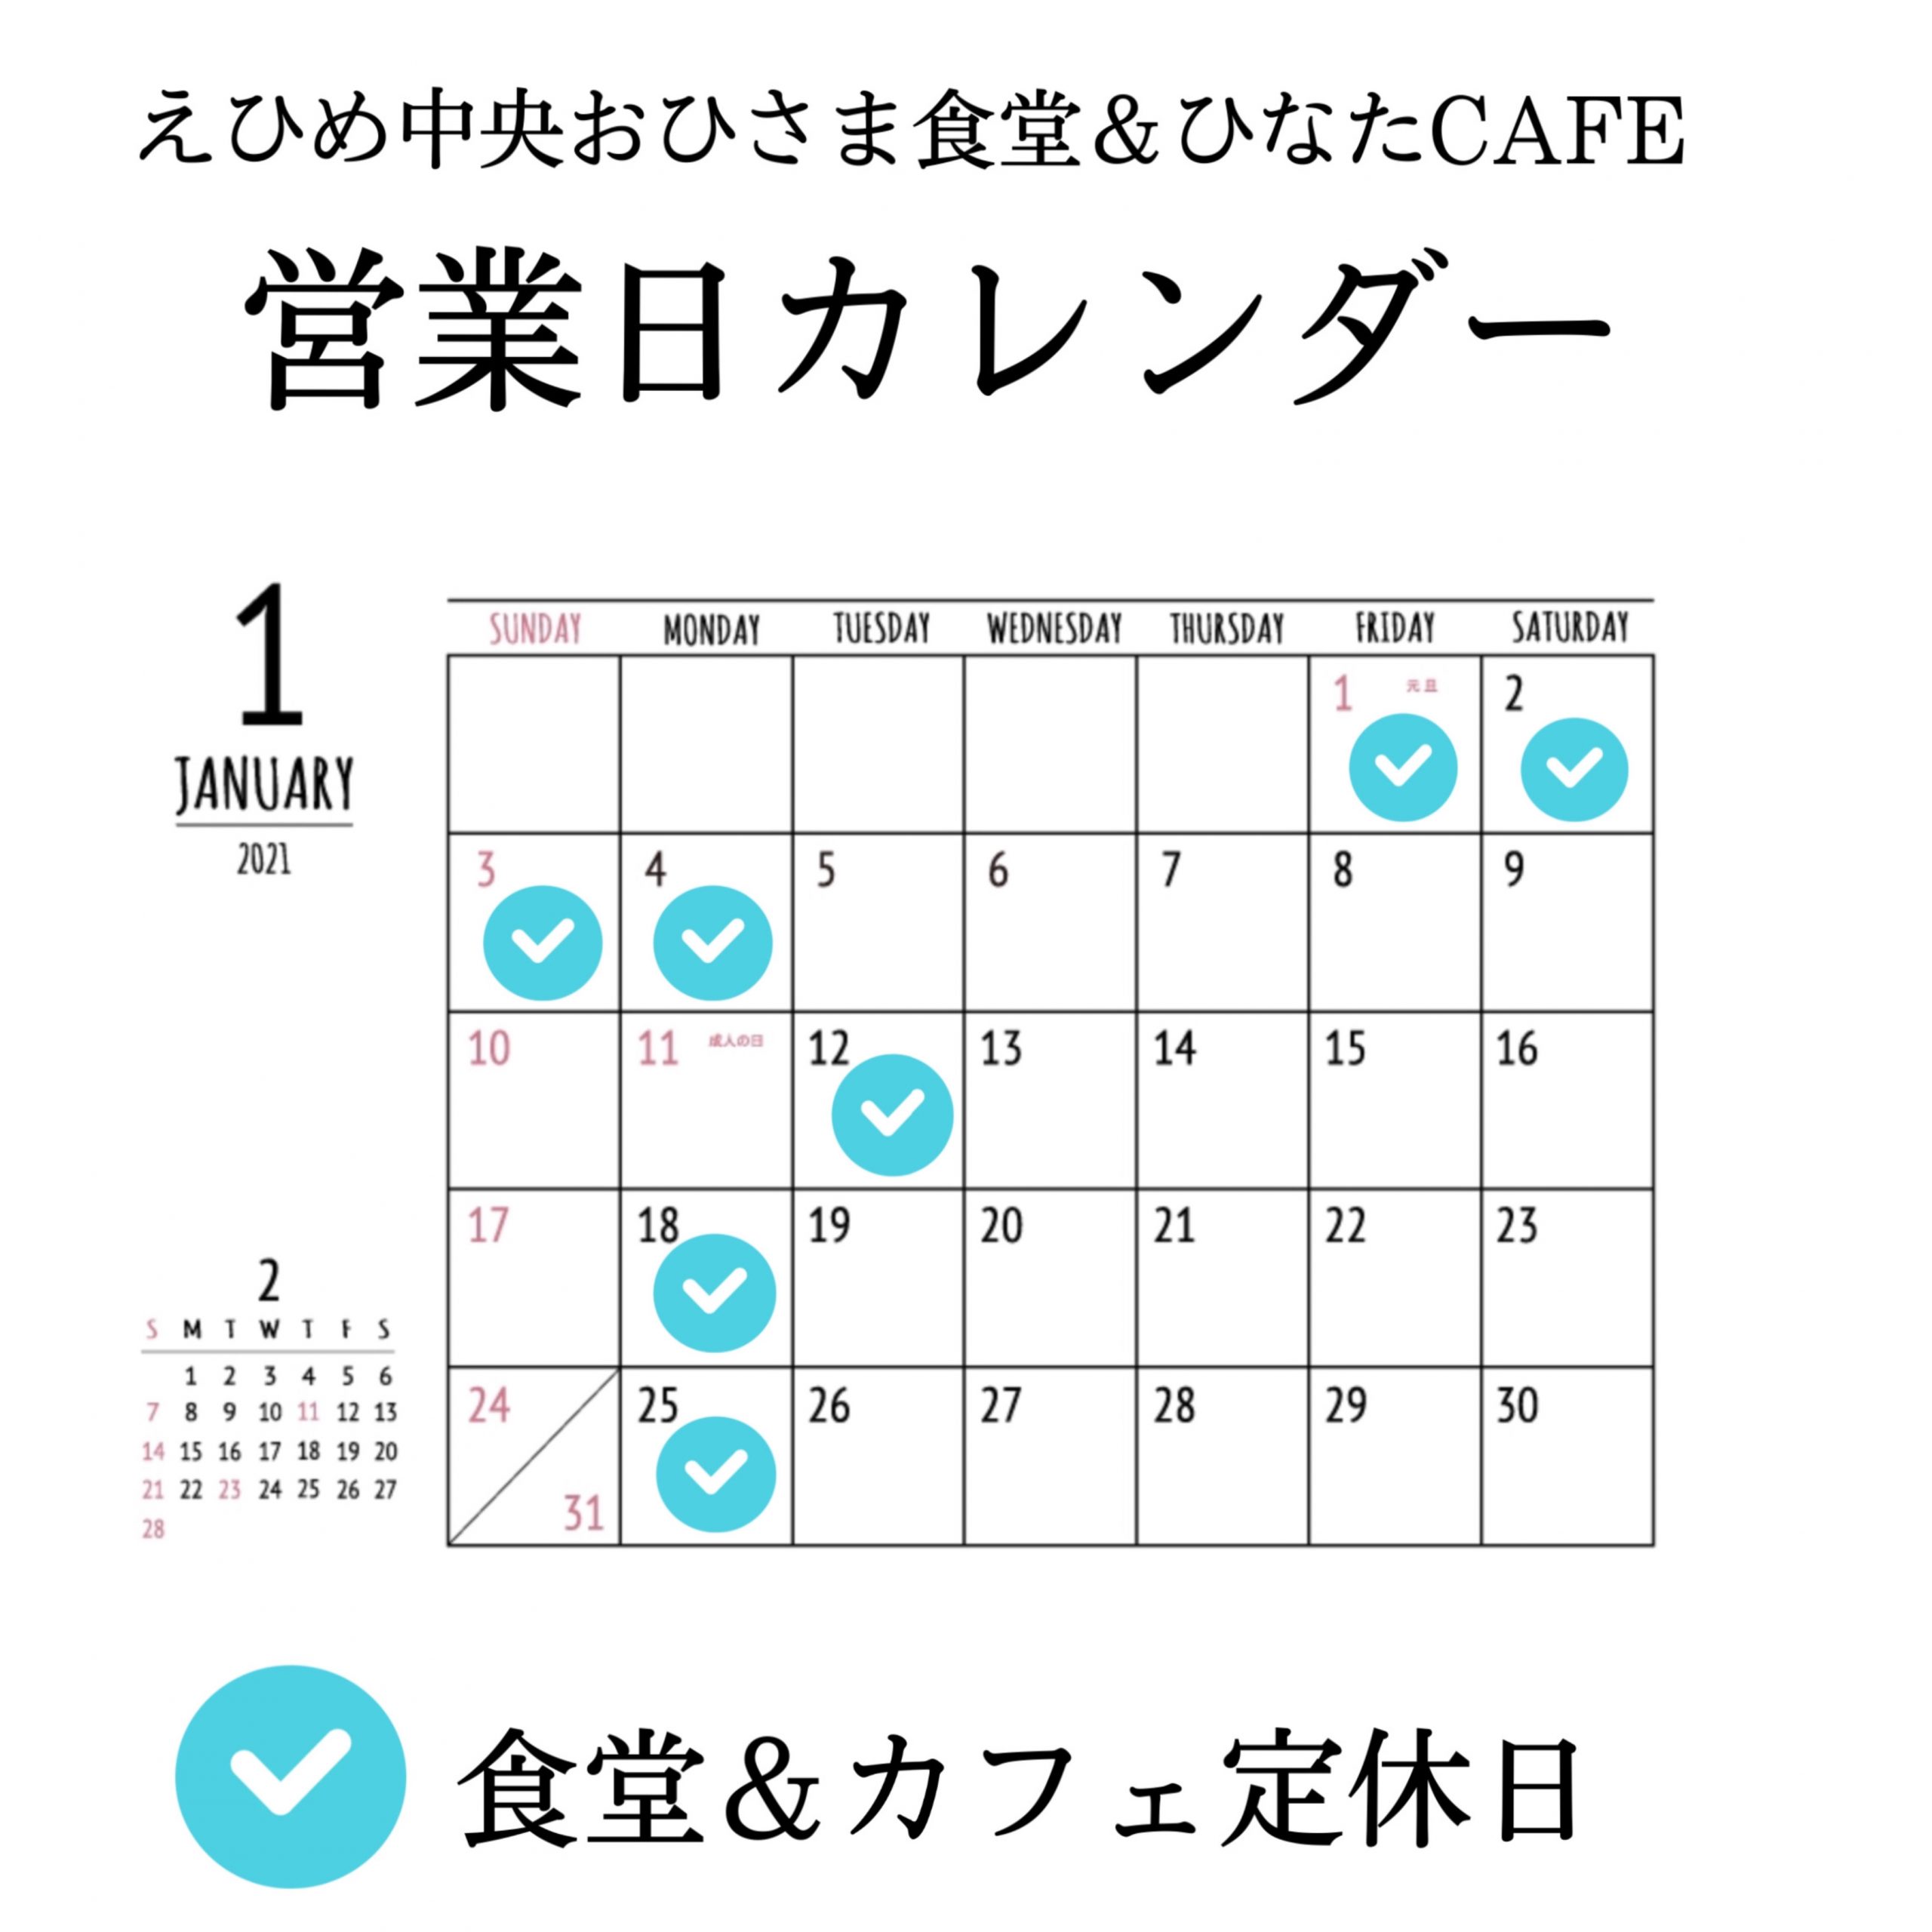 食堂 カフェ 1月の営業日カレンダー Jaえひめ中央 えひめ中央農業協同組合